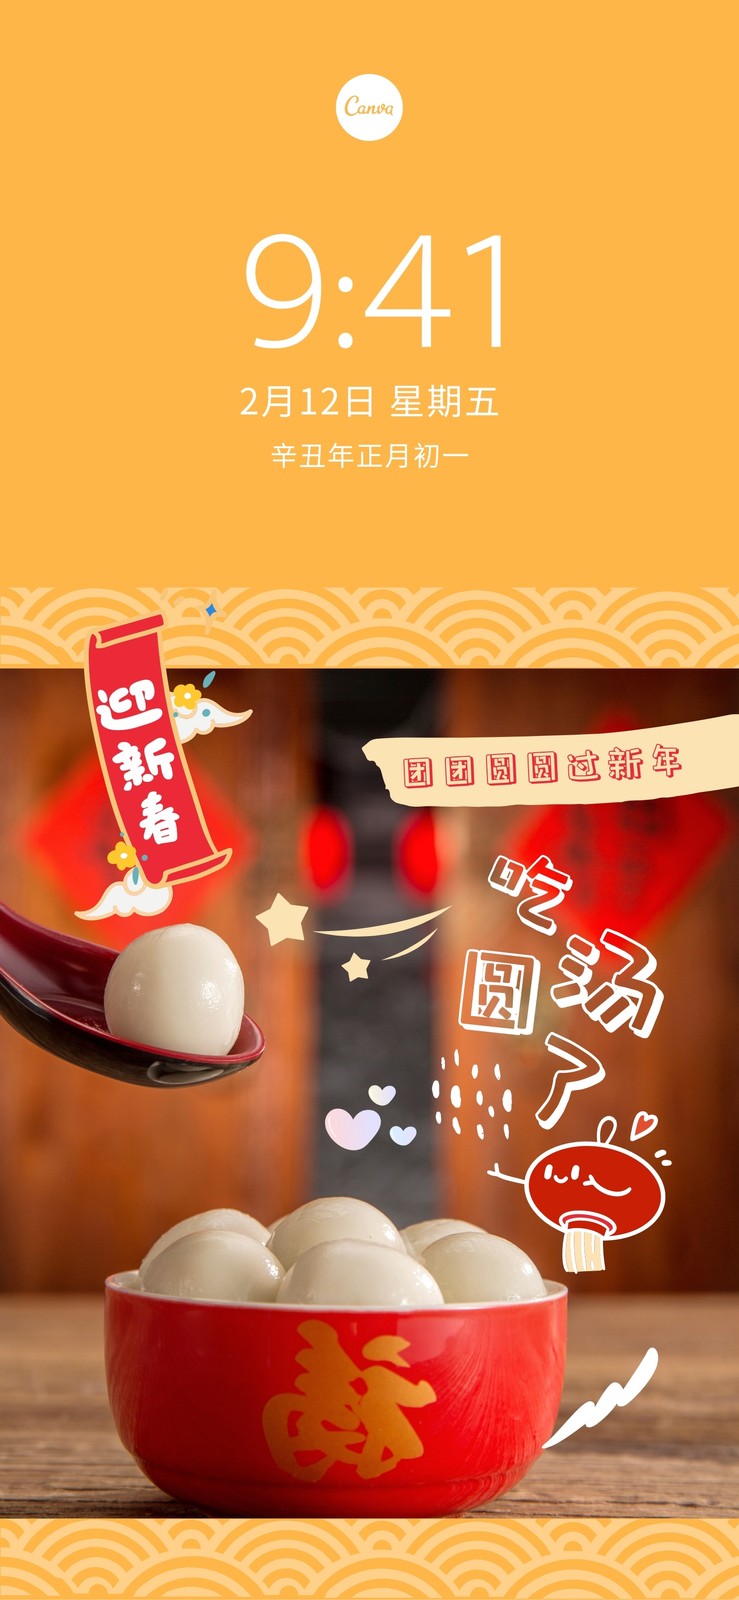 黄红色新年风吃汤圆照片照片新年plog分享中文新手机壁纸